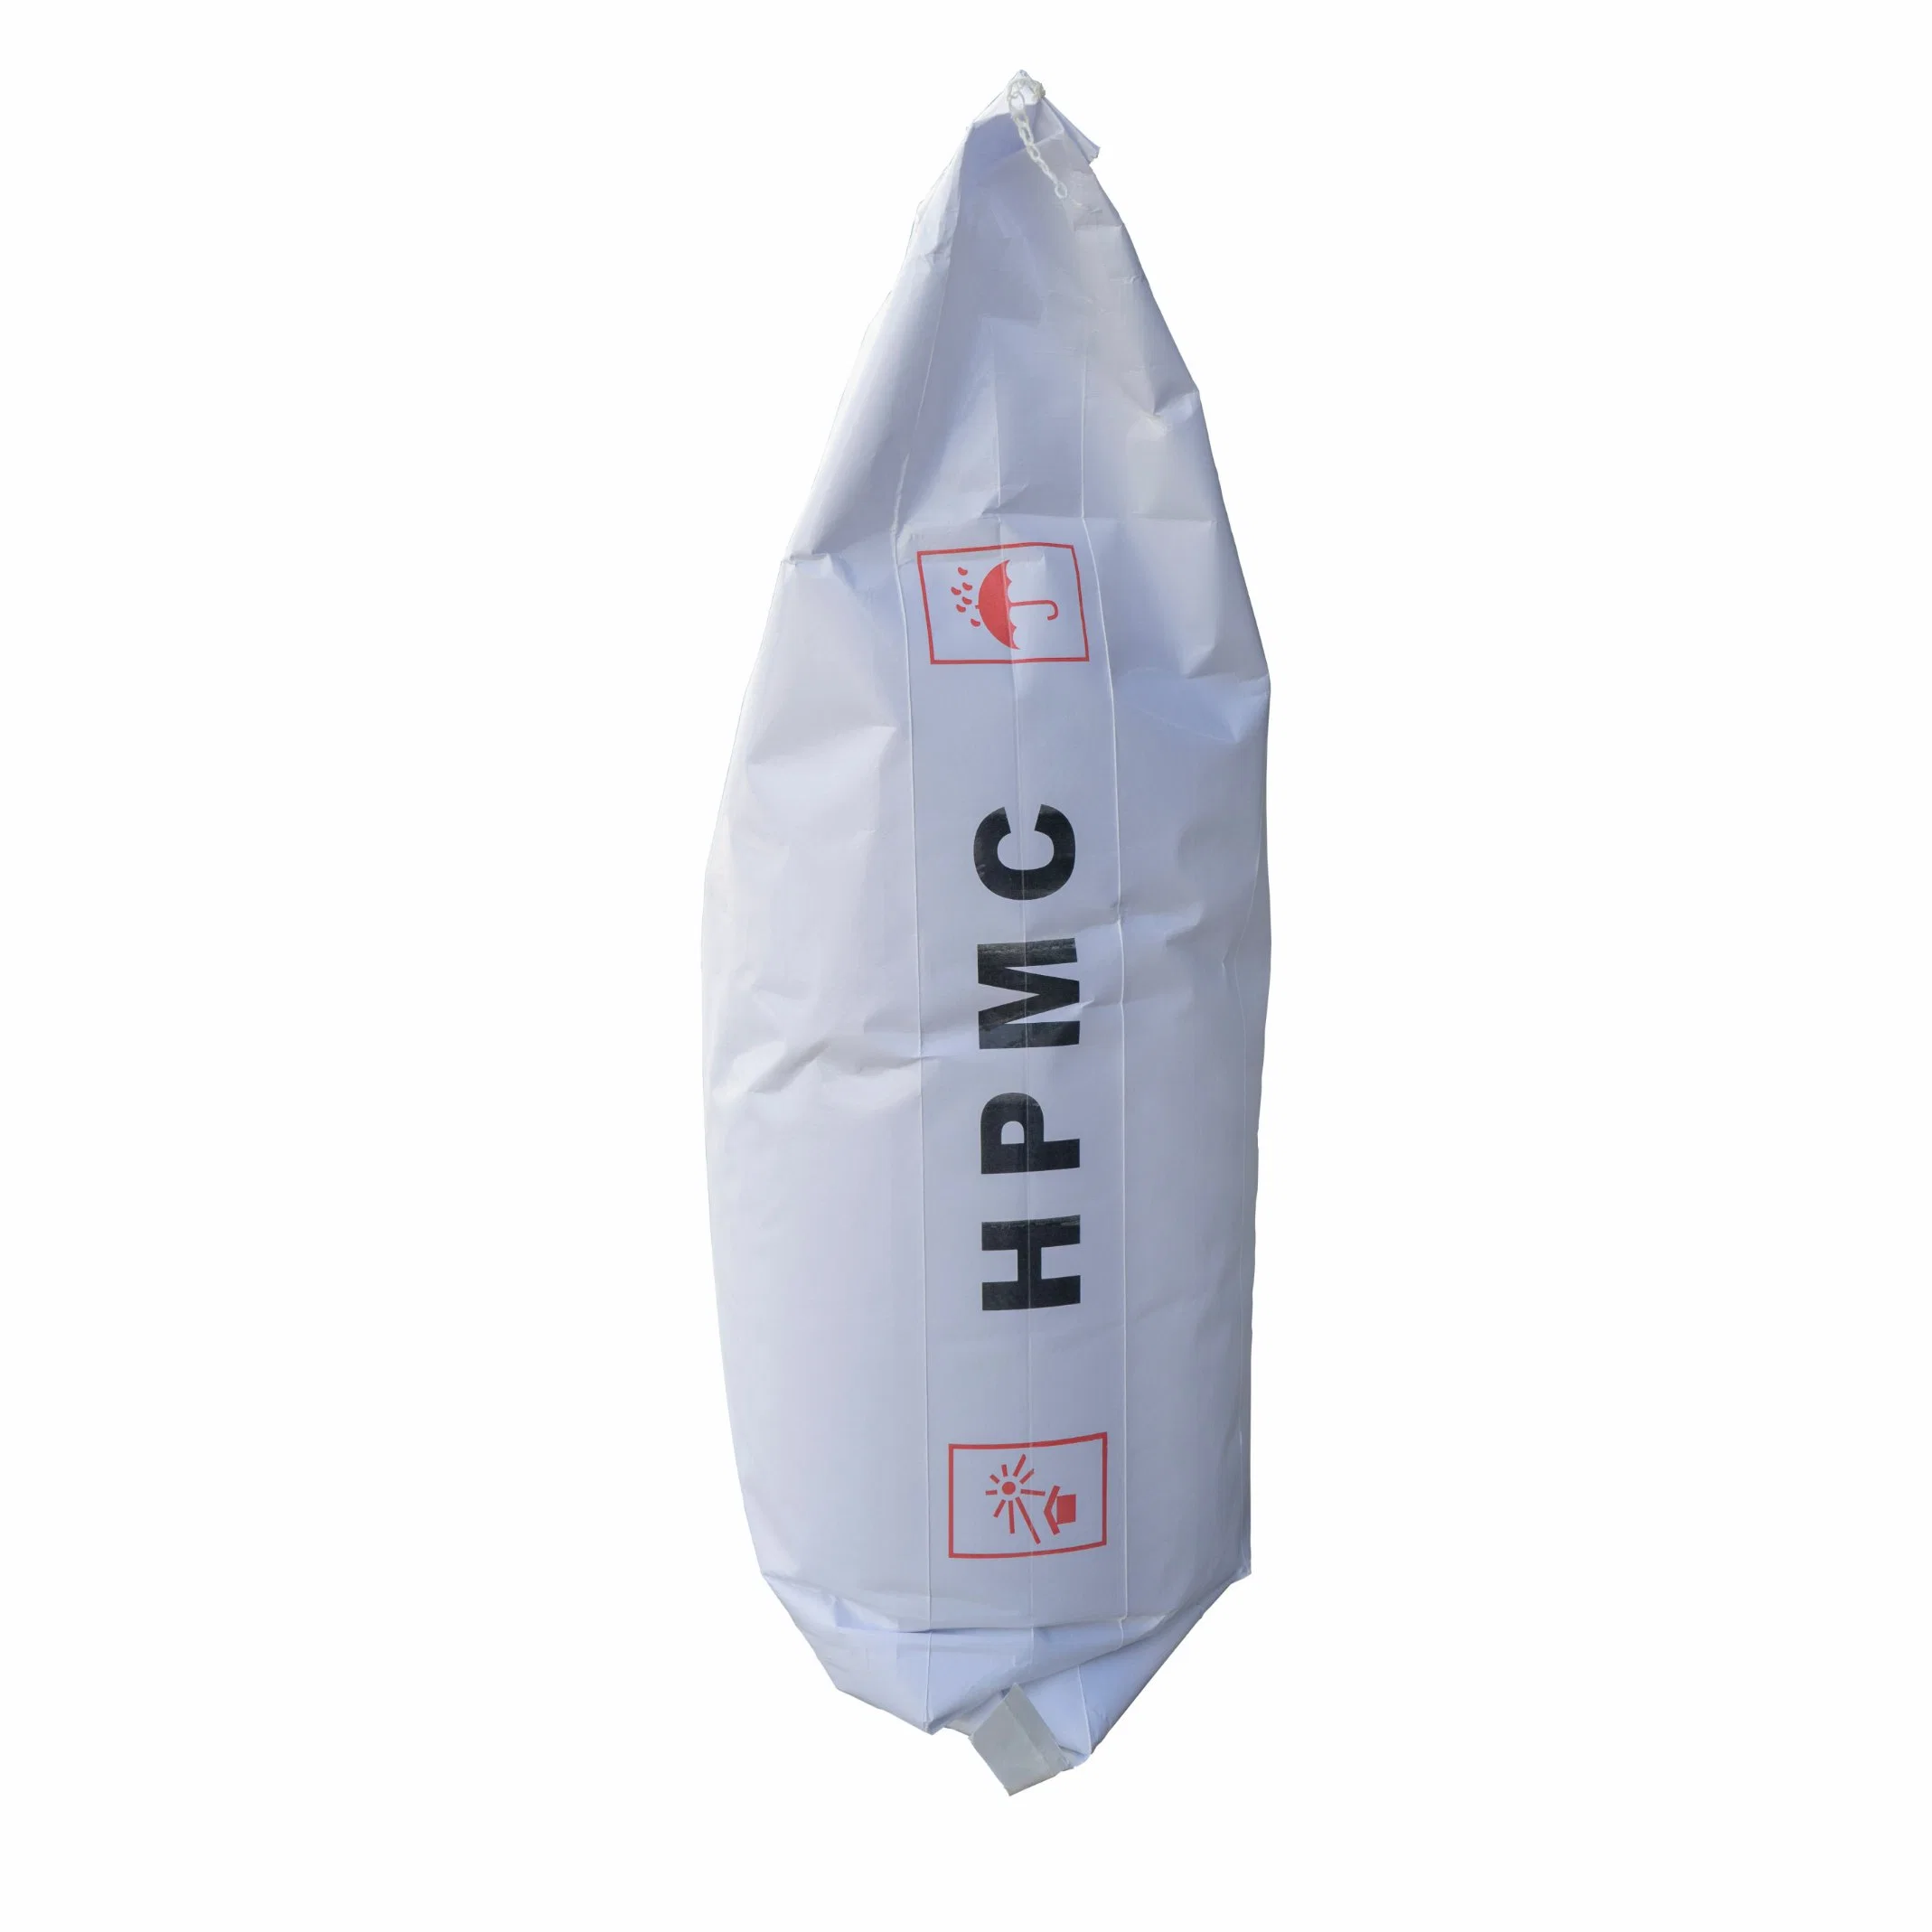 O material de construção HPMC hidroxi propil metil celulose como pigmento